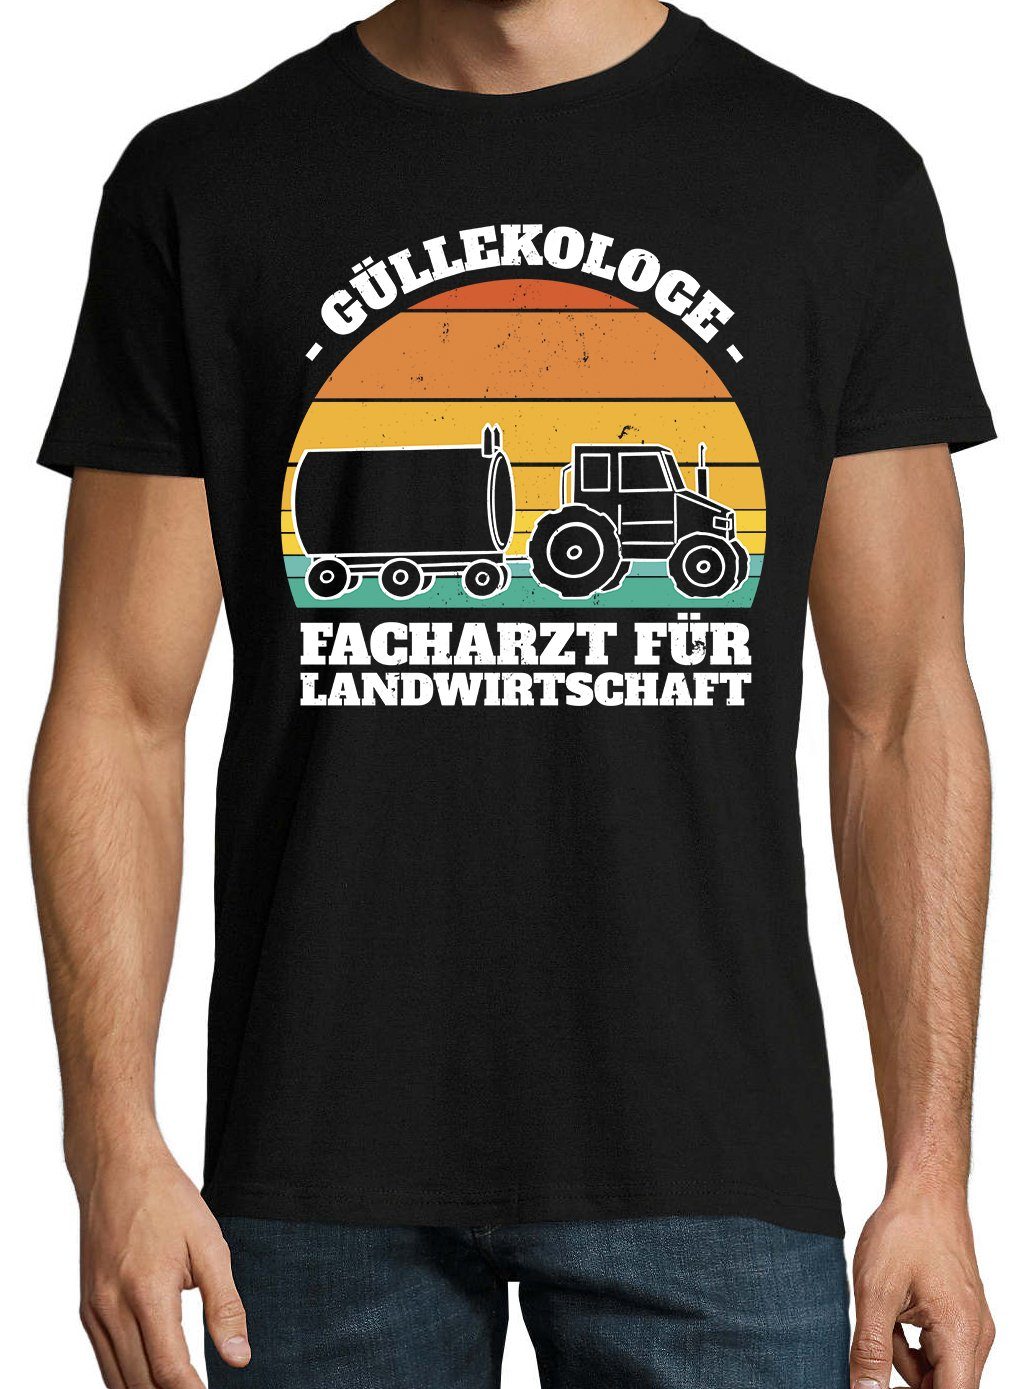 mit Youth Shirt Schwarz Farmer Frontprint lustigem Designz Güllekologe Herren T-Shirt